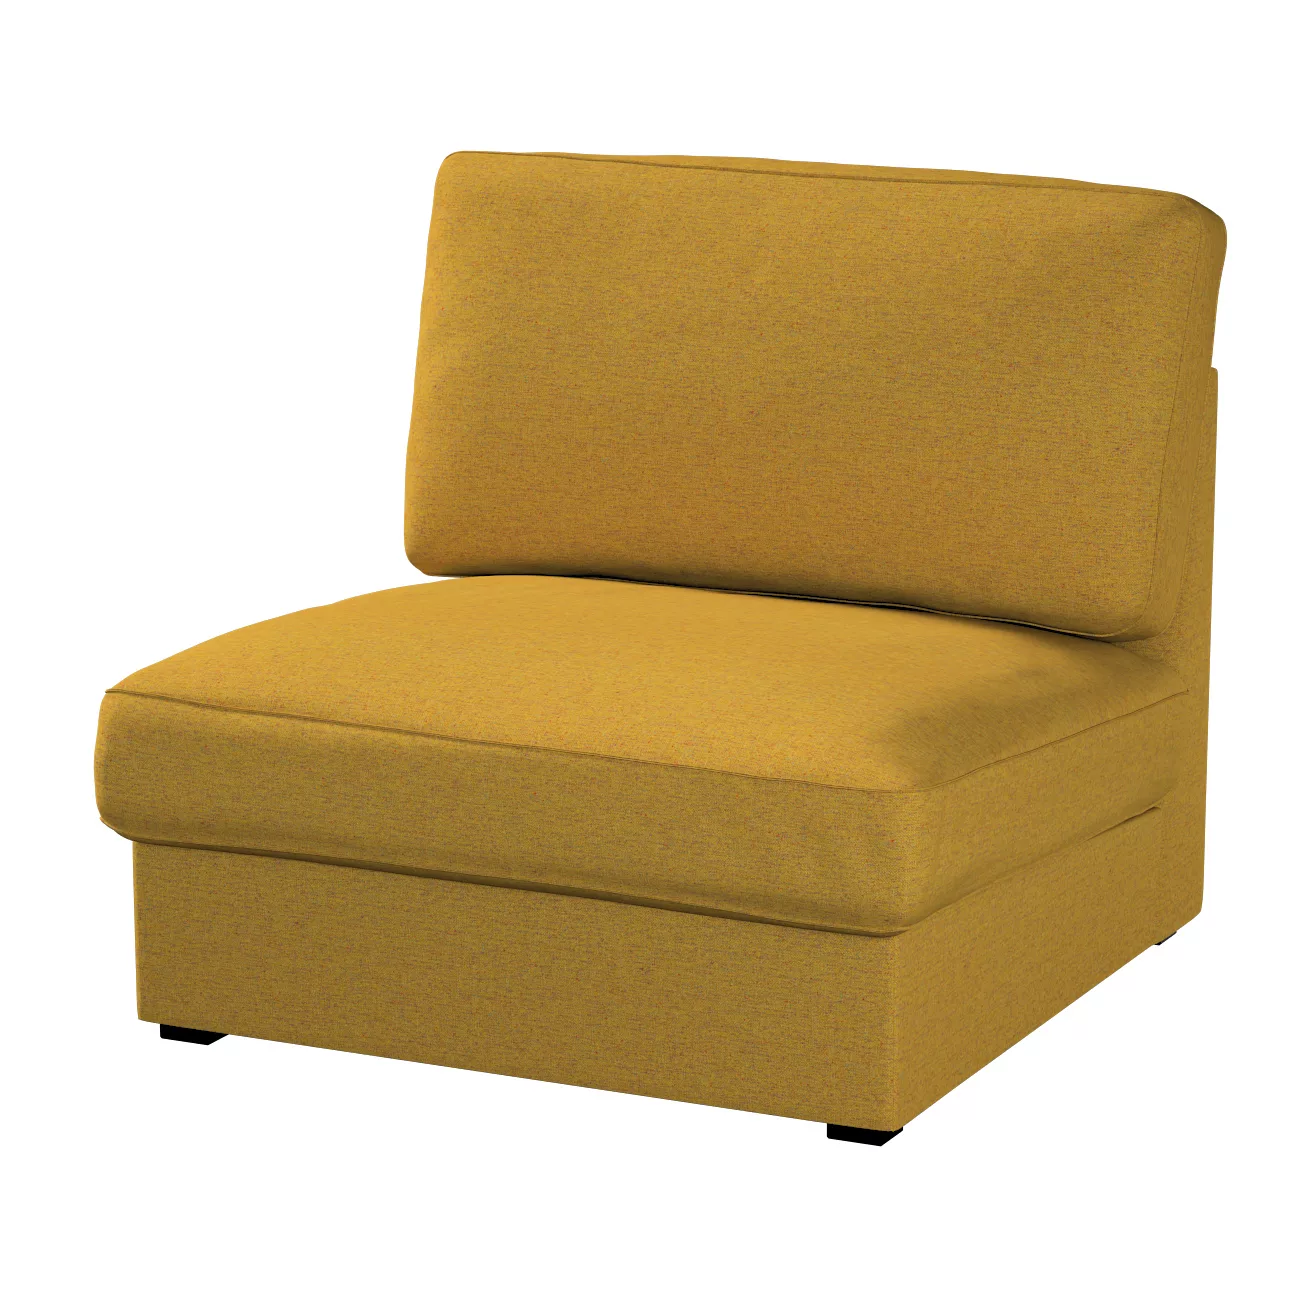 Bezug für Kivik Sessel nicht ausklappbar, gelb, Bezug für Sessel Kivik, Mad günstig online kaufen